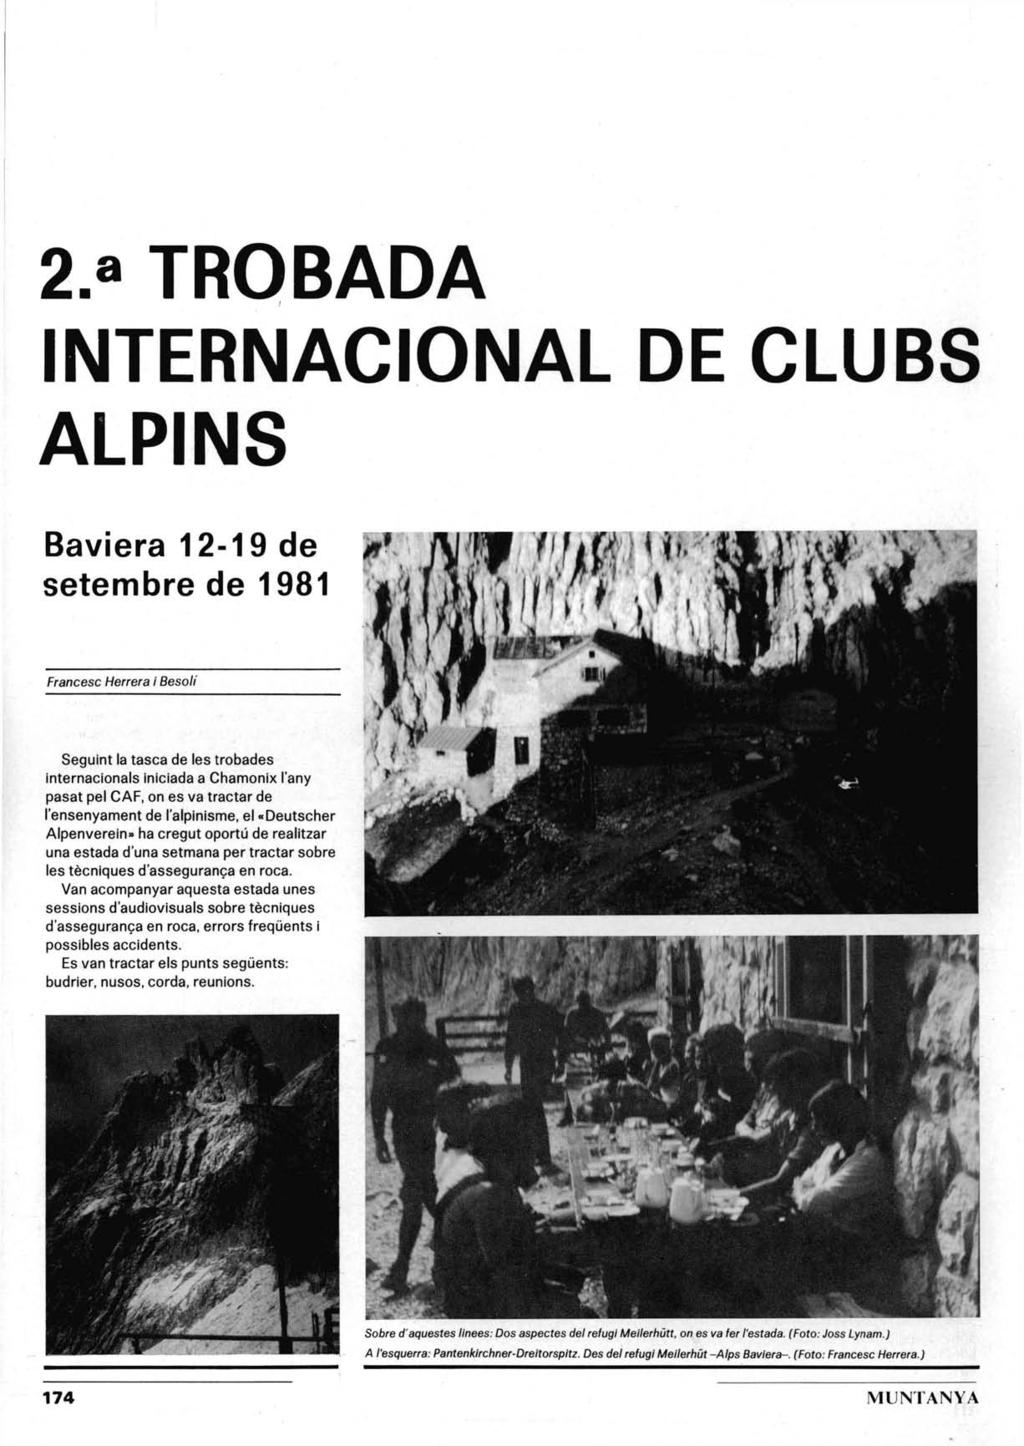 2.» TROBADA INTERNACIONAL DE CLUBS ALPINS Baviera 12-19 de setembre de 1981 Francese Herrera i Besoli Seguint la tasca de les trobades internacionals iniciada a Chamonix l'any pasat pel CAF, on es va